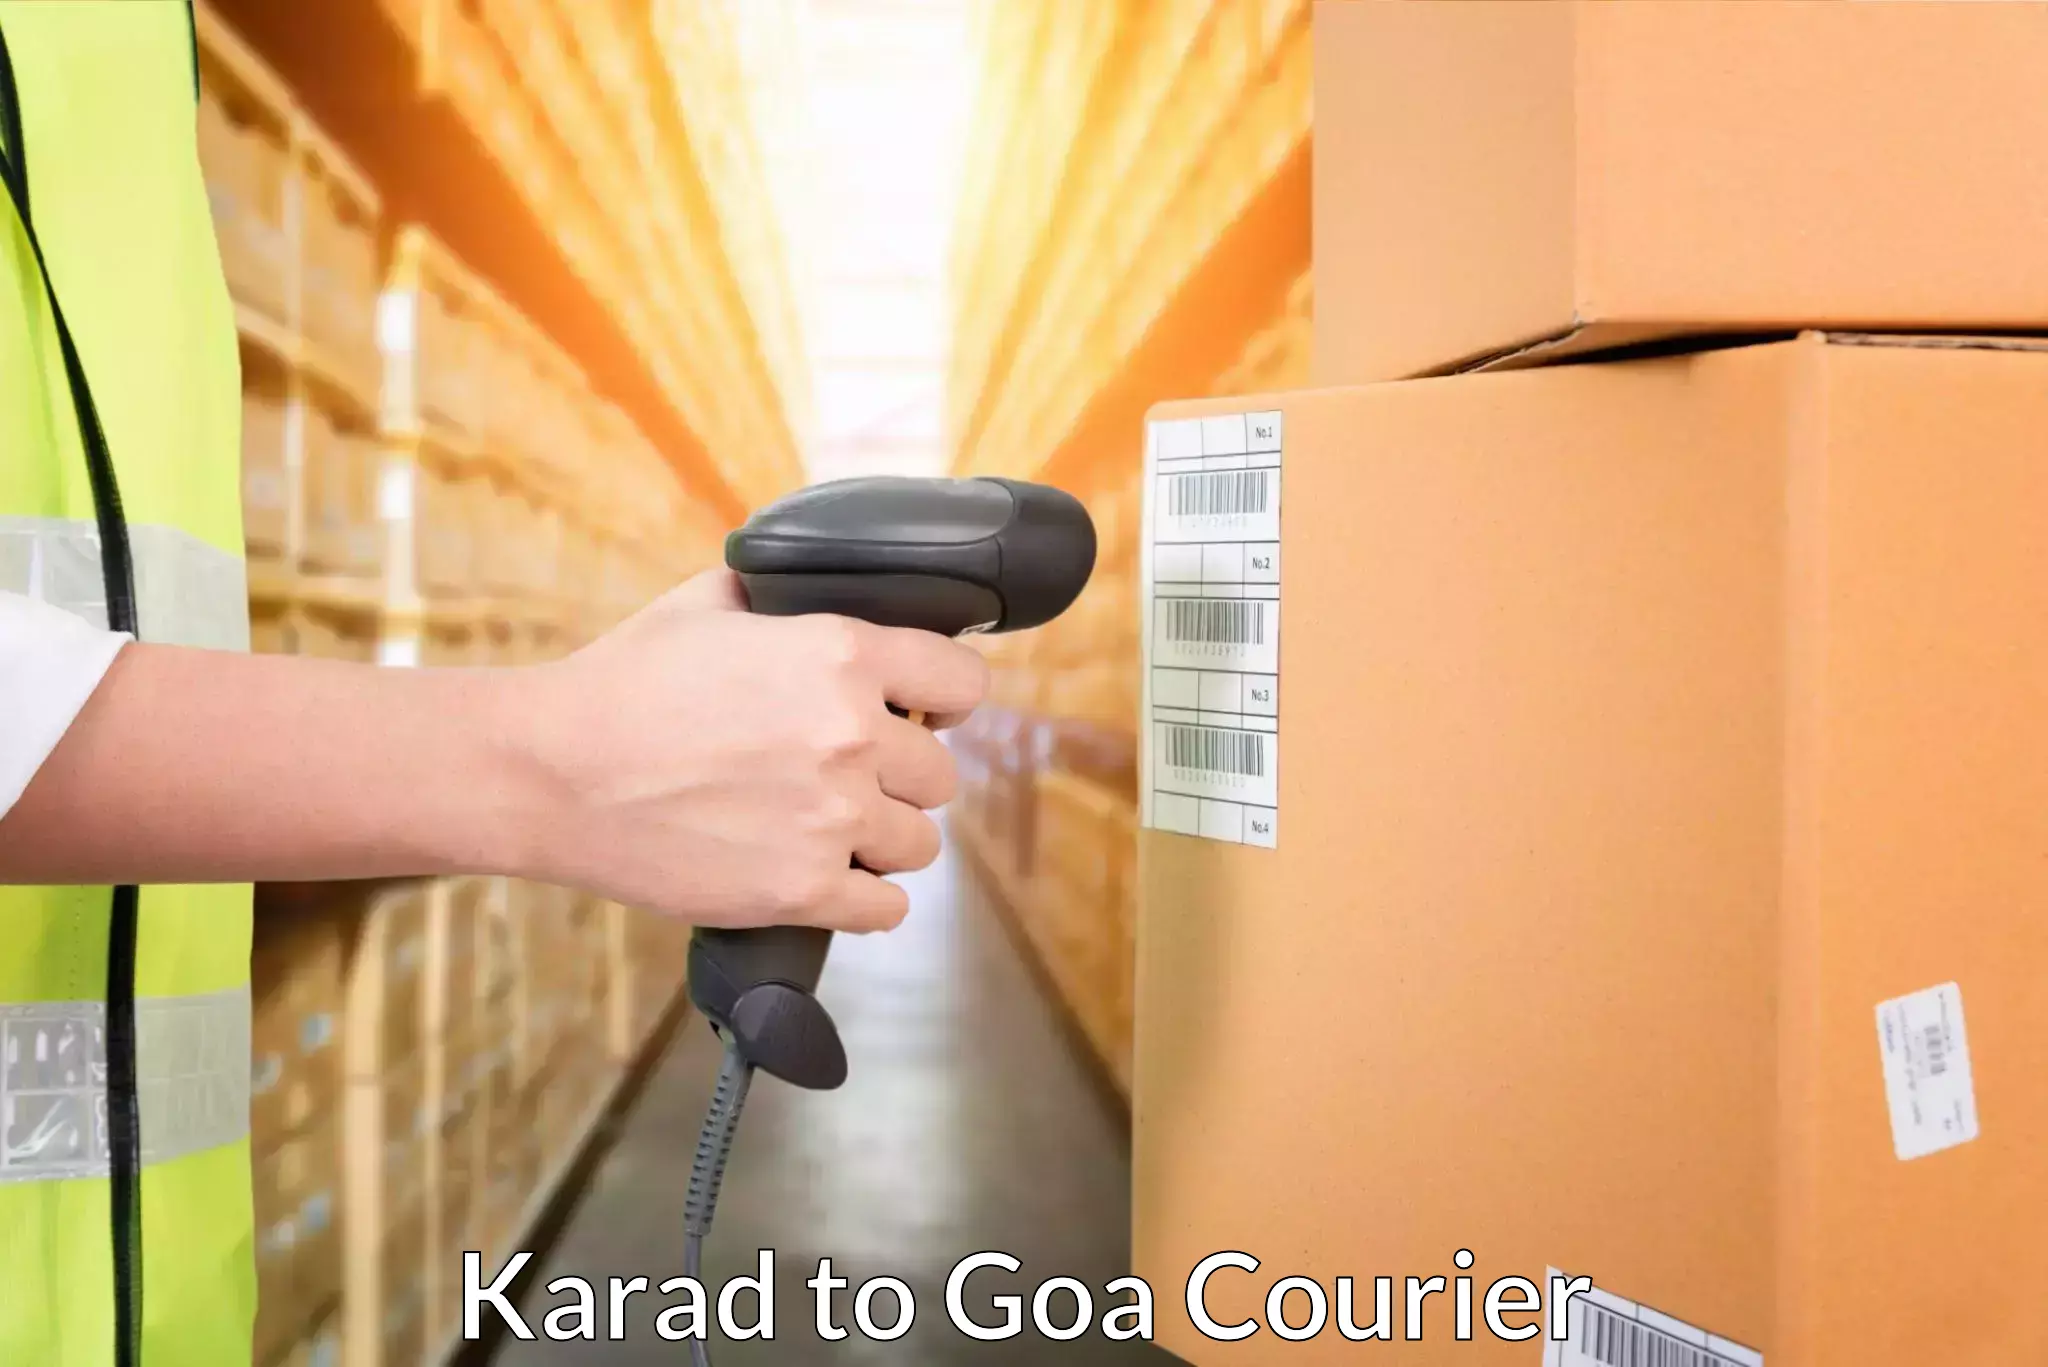 24/7 courier service Karad to Canacona